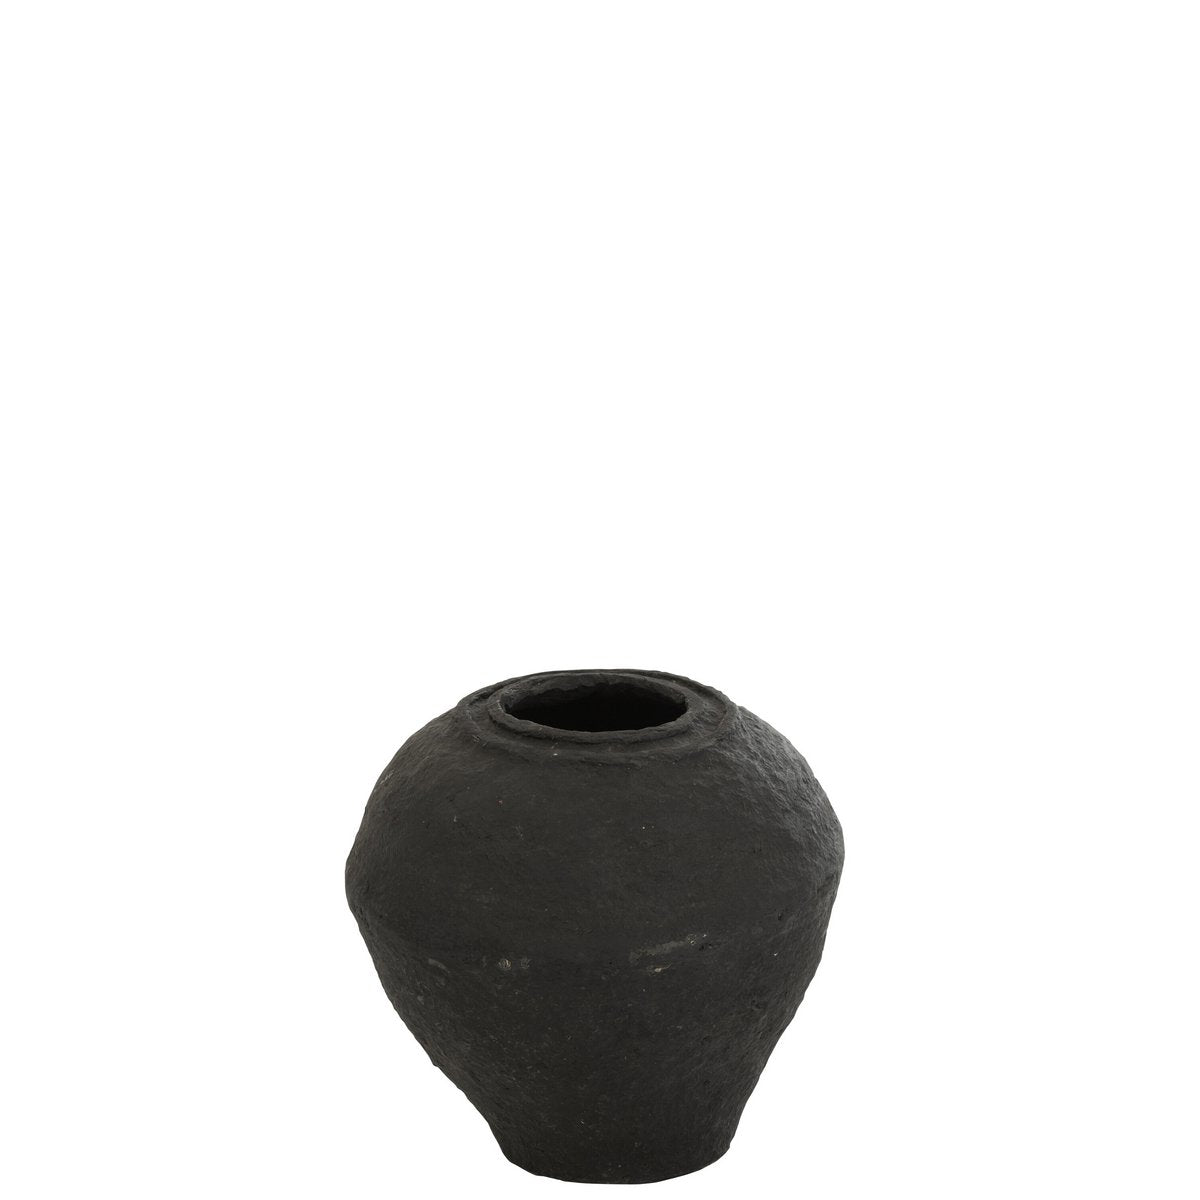 Decorative vase made of papier-mâché - black